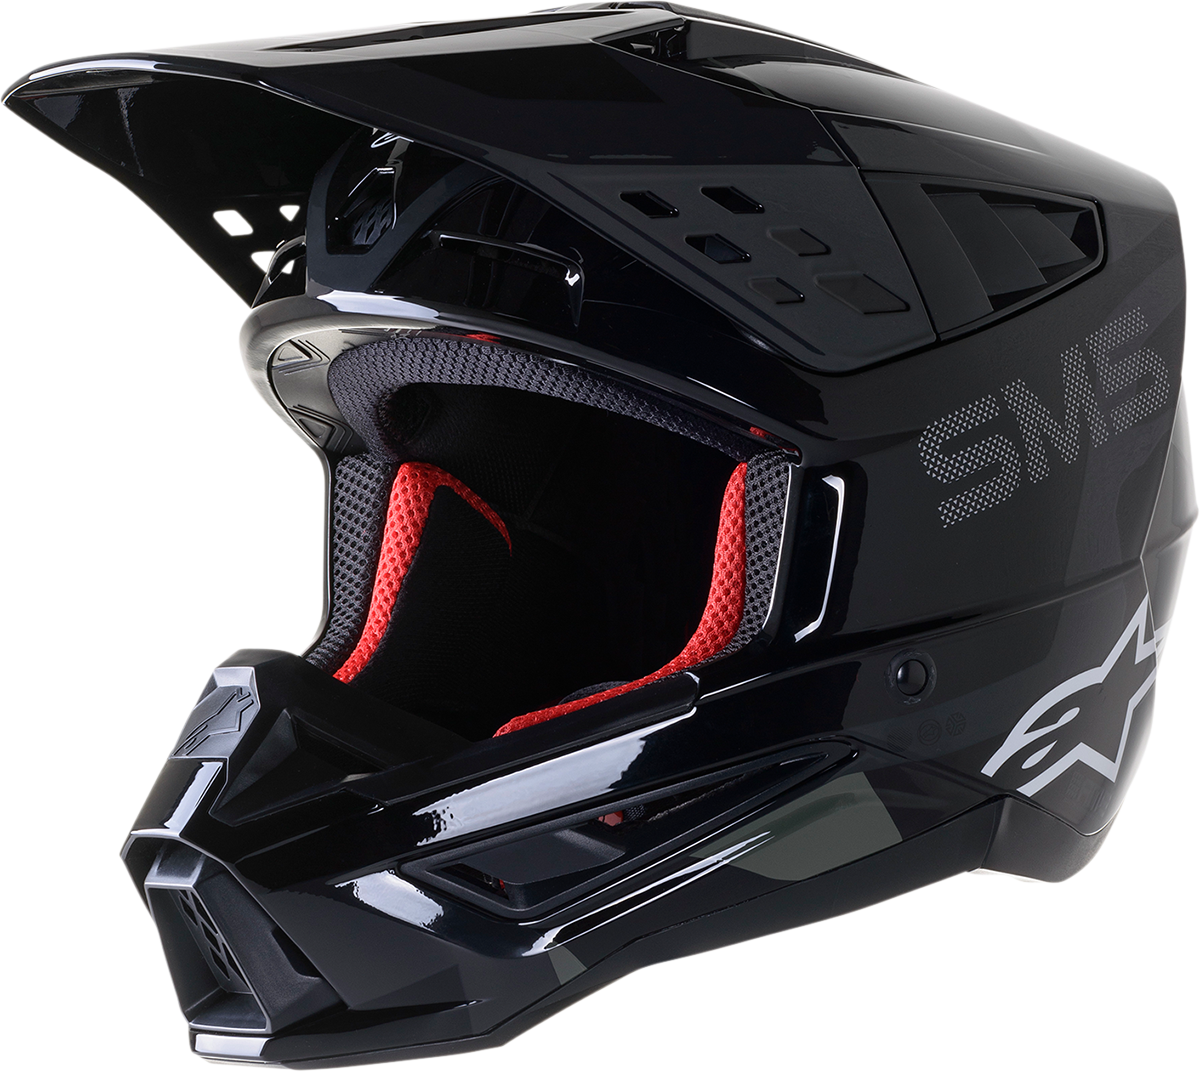 SM5 Helmet - Rover - Black/Anthracite/Camo - Small